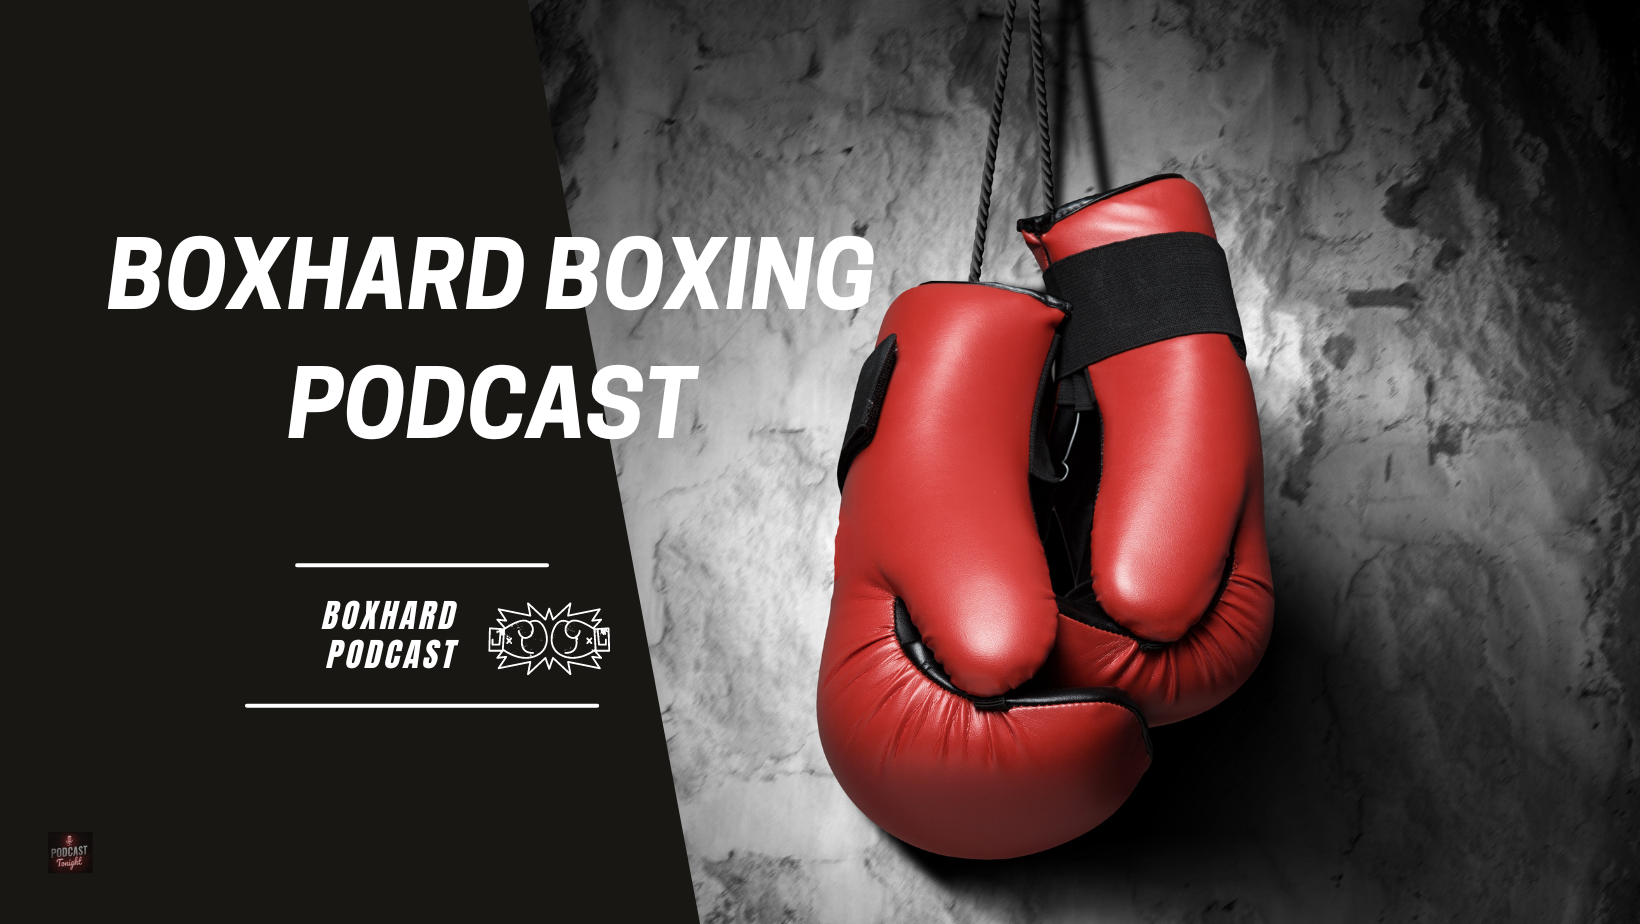 Boxhard boxing podcast